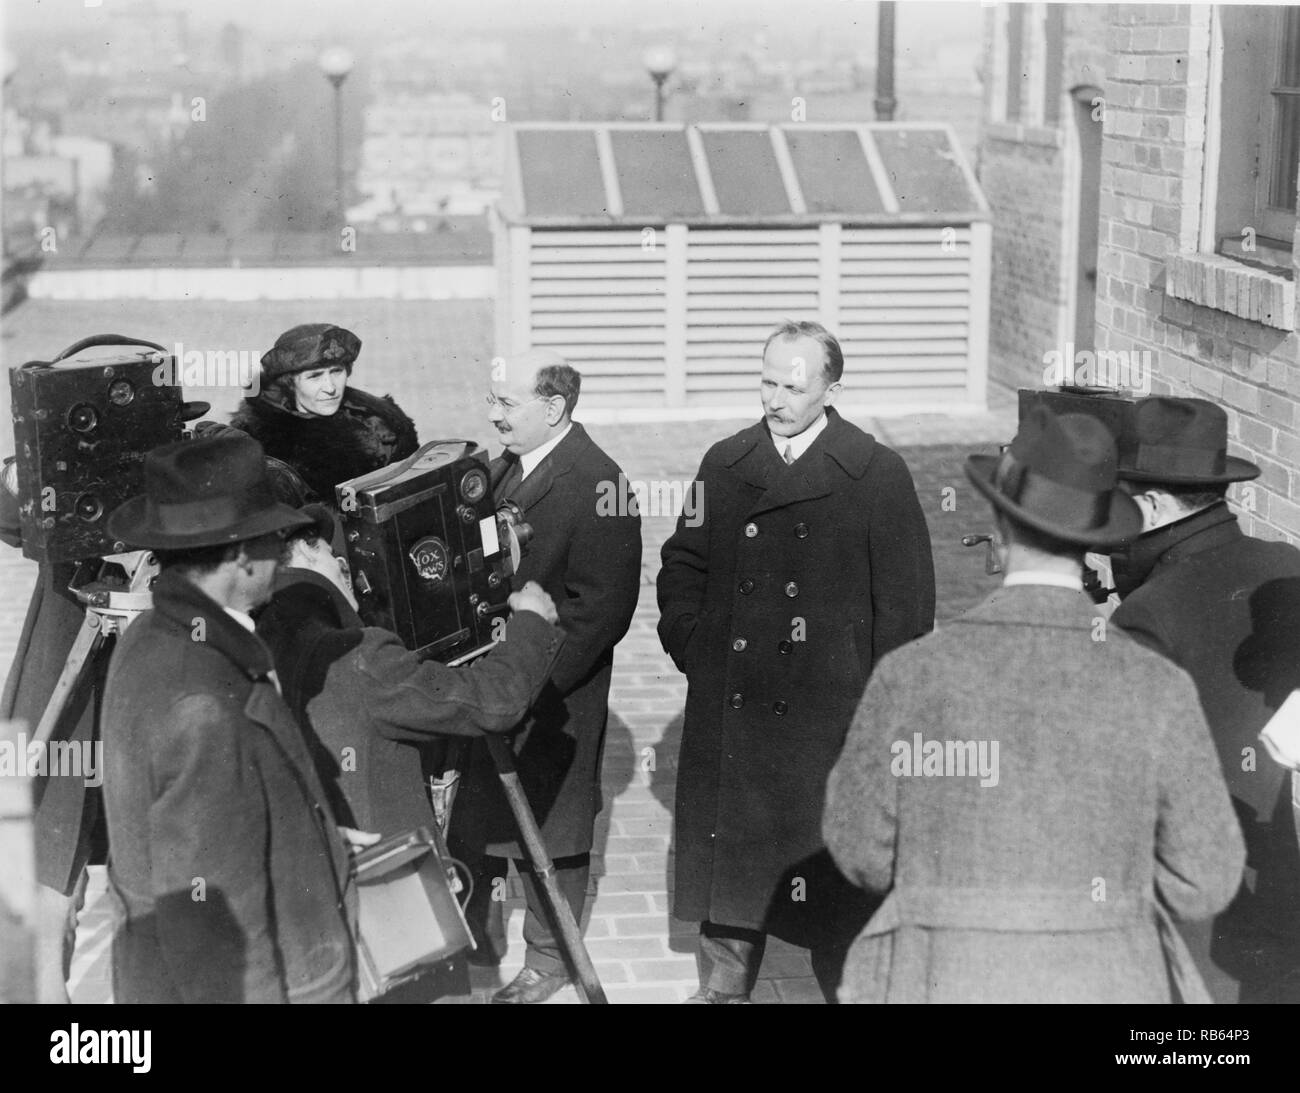 Photo de Ludwig Martens (représentant du gouvernement soviétique), son secrétaire, M. S. Nuorteva (à gauche), et Madame Nuorteva, posés sur le toit, de motion picture de cameramen. Datée 1923 Banque D'Images